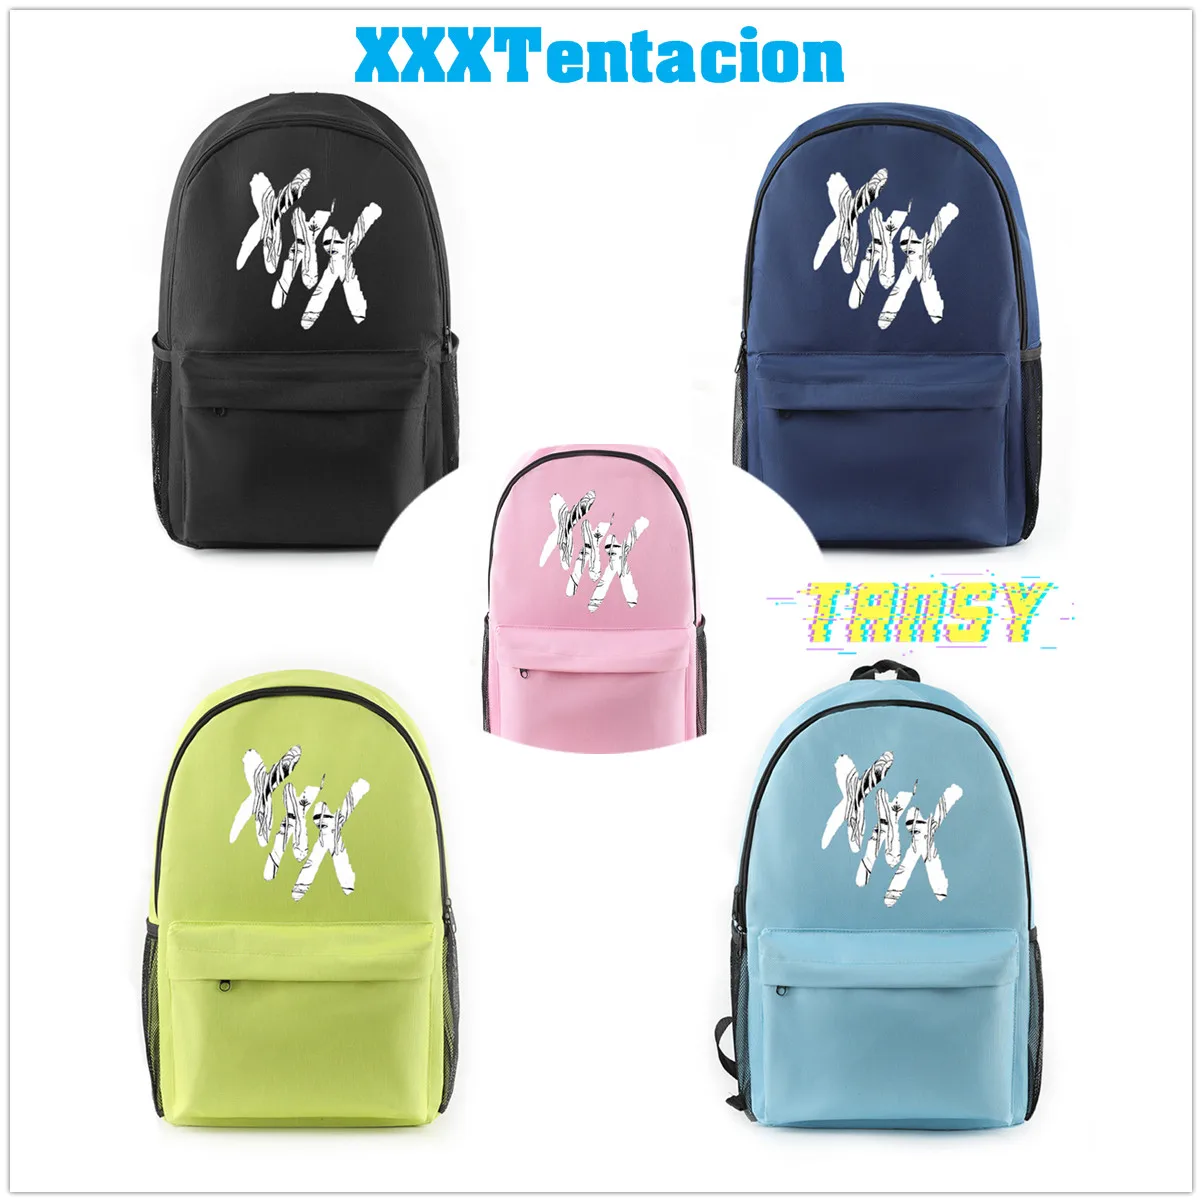 Раппер XXXTentacion аксессуары холст Harajuku сумка веселый рюкзак аниме хип-хоп подростковый школьный стиль крутые холщовые сумки